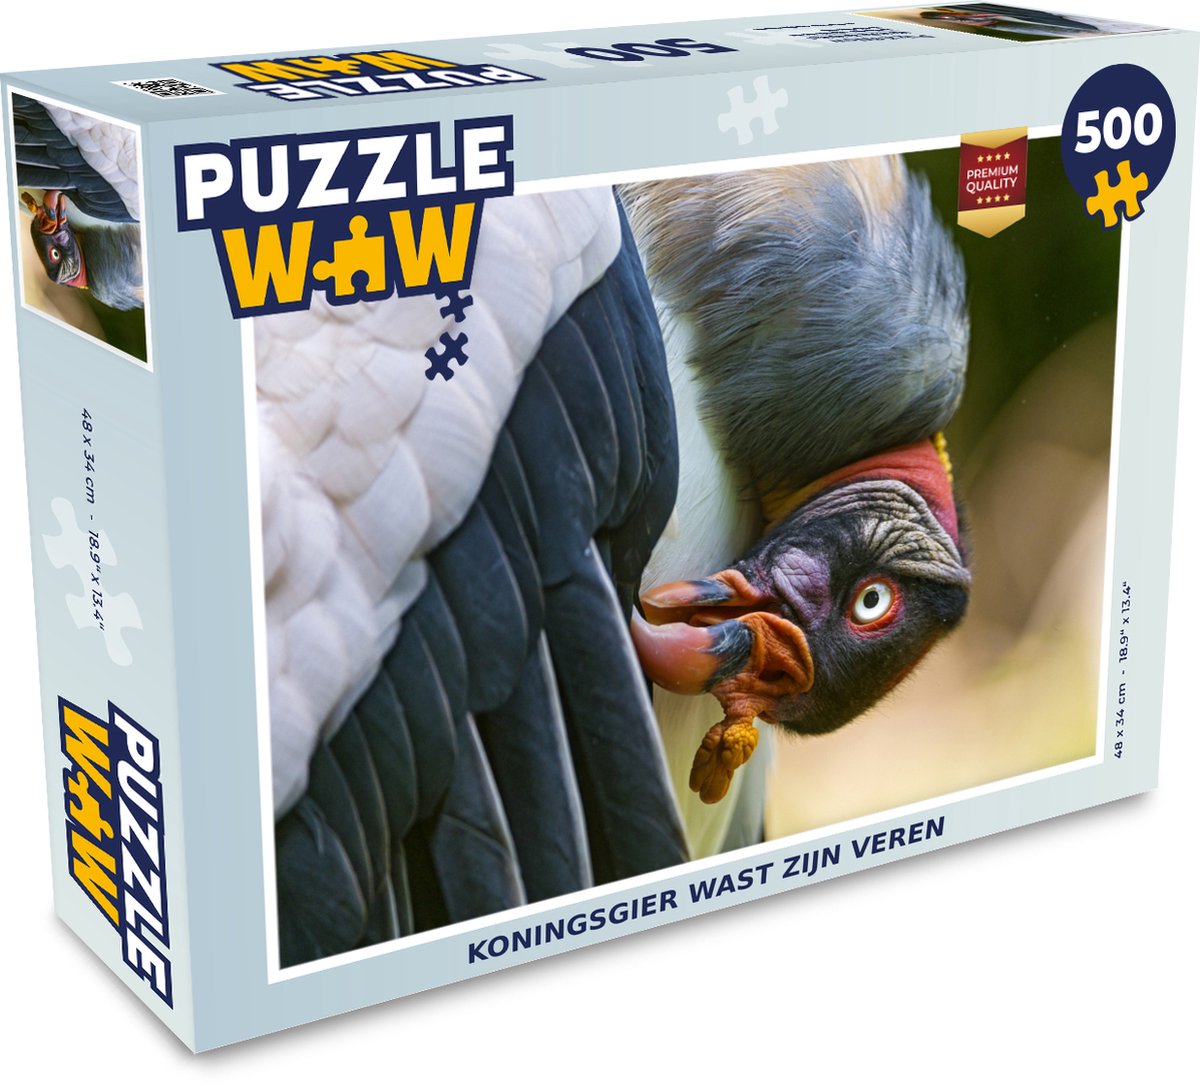 Afbeelding van product Puzzel 500 stukjes Koningsgier - Koningsgier wast zijn veren - PuzzleWow heeft +100000 puzzels